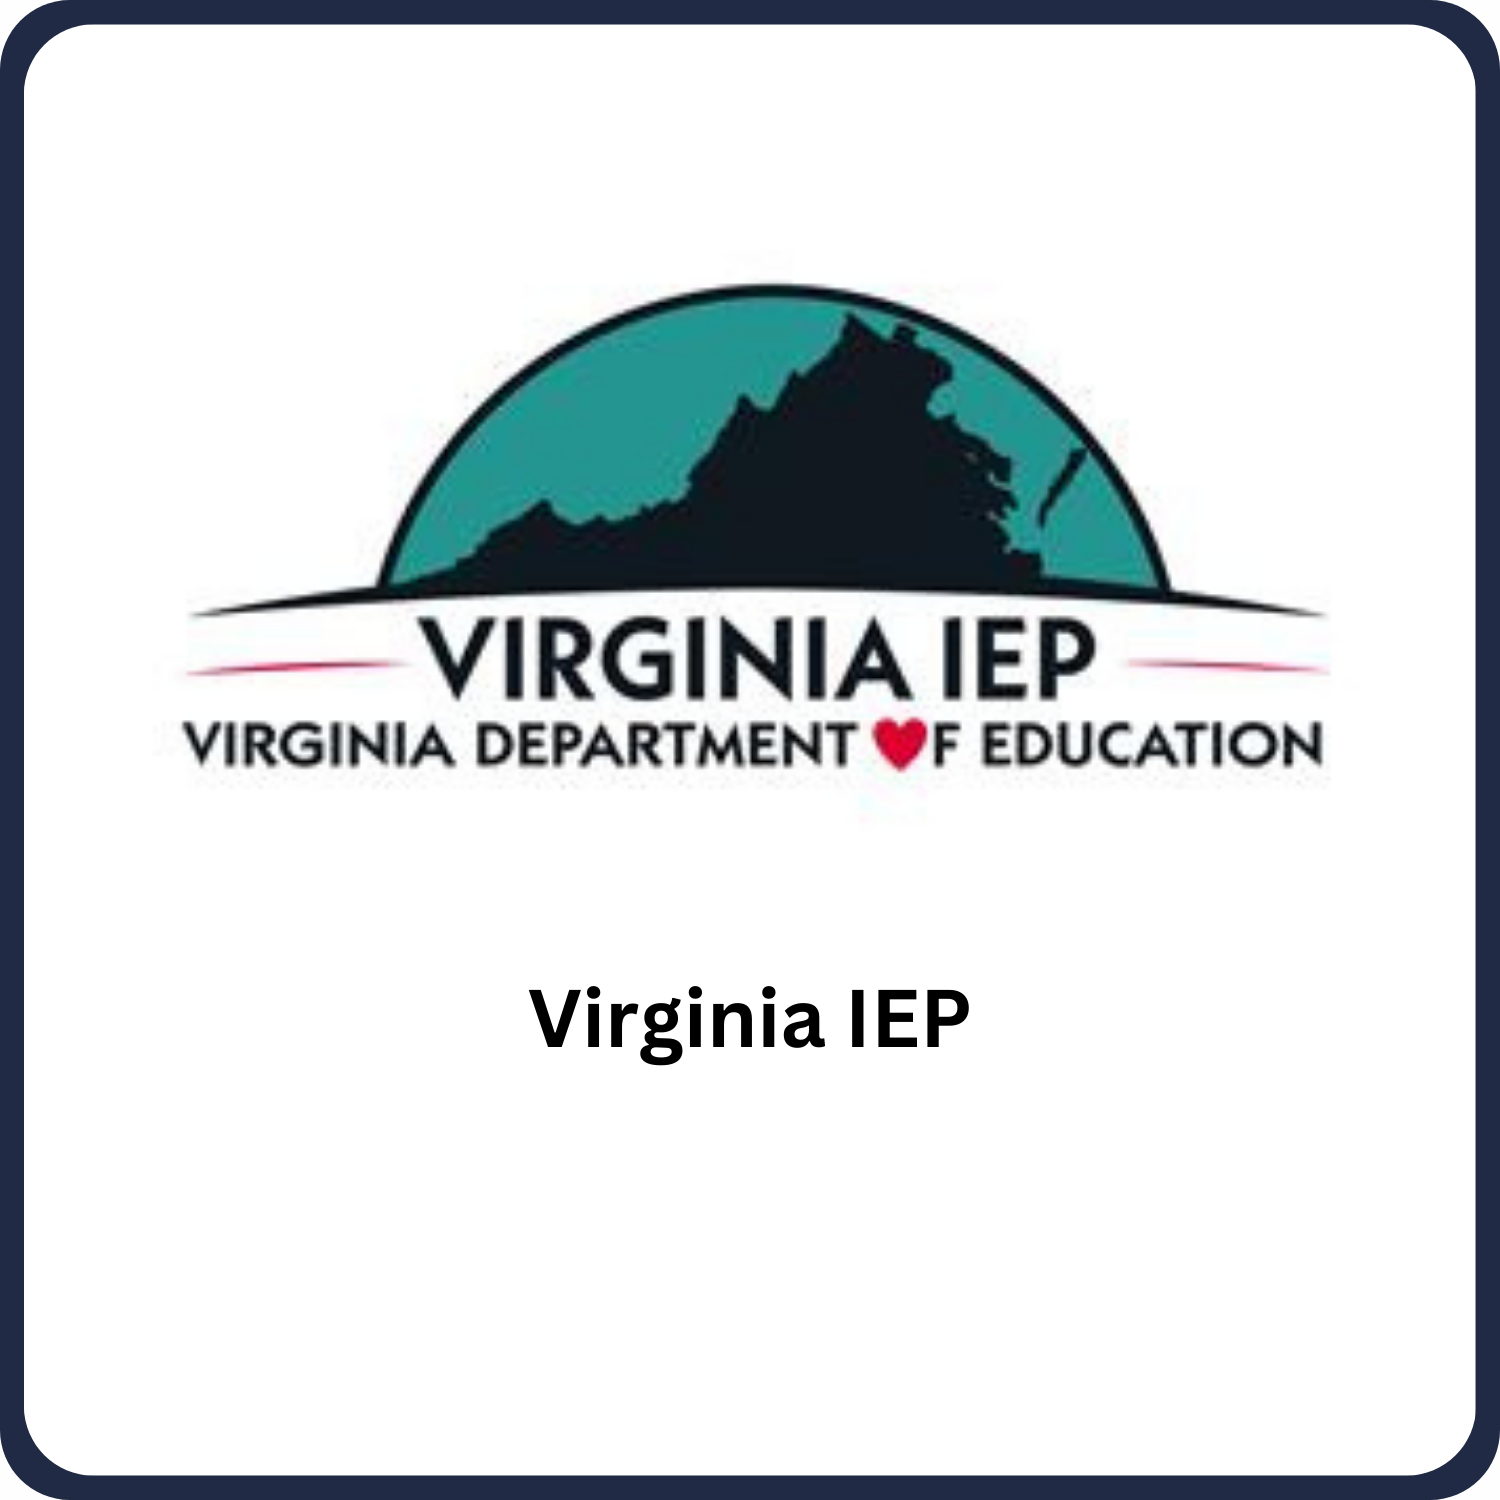 Virginia IEP